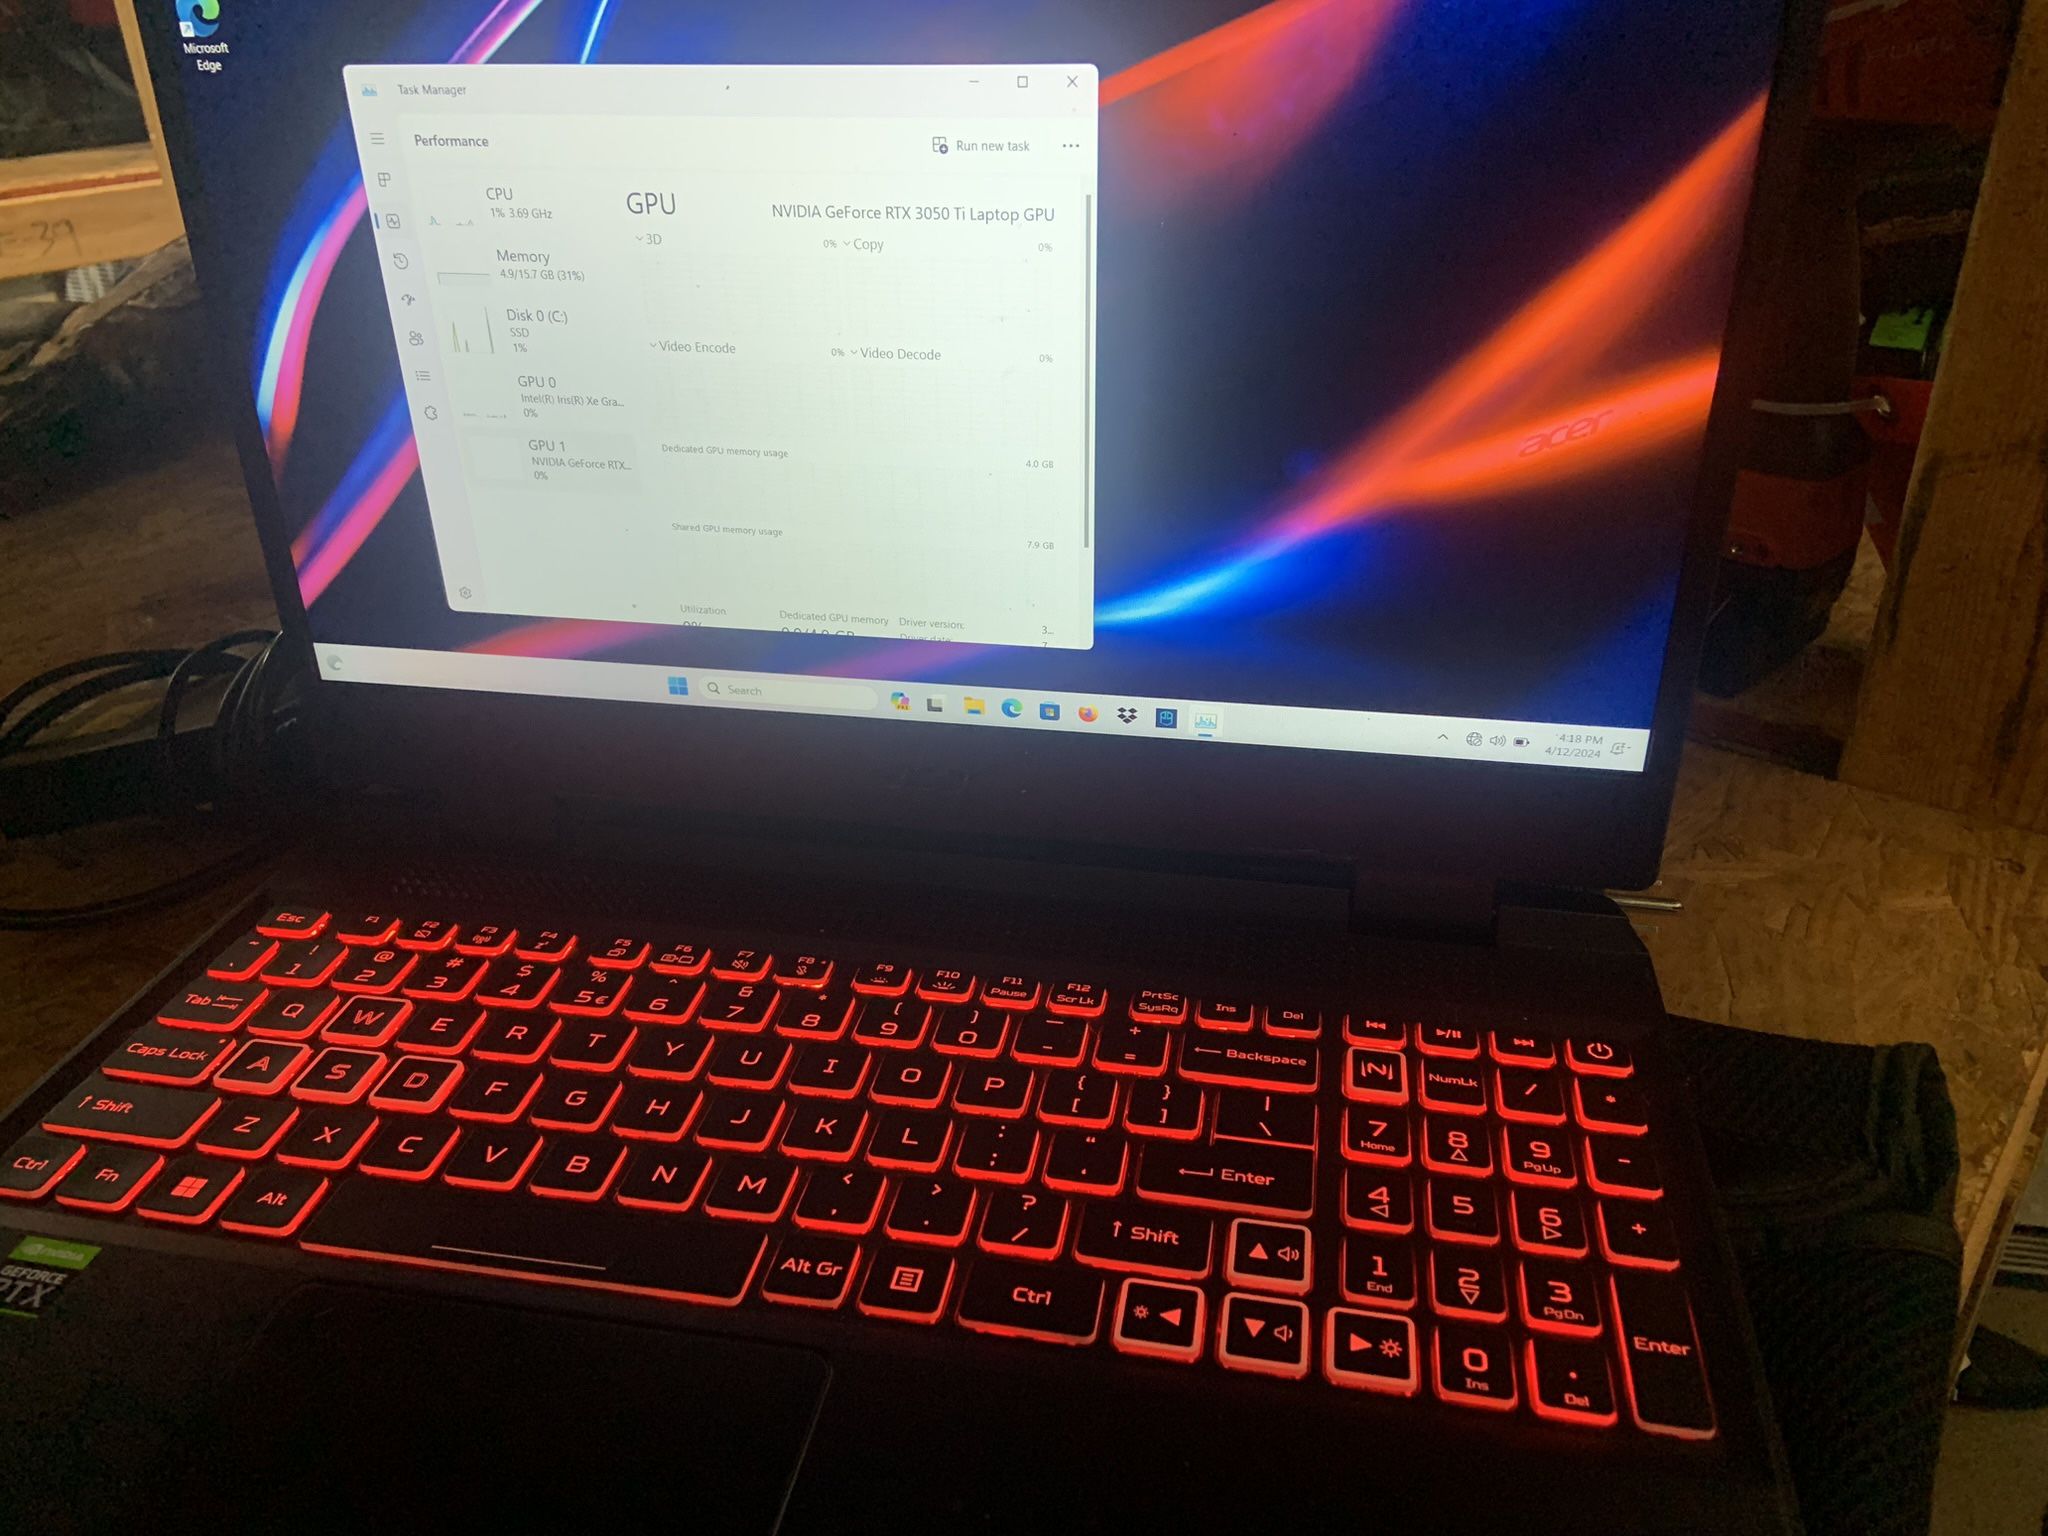 Gaming Laptop Acer